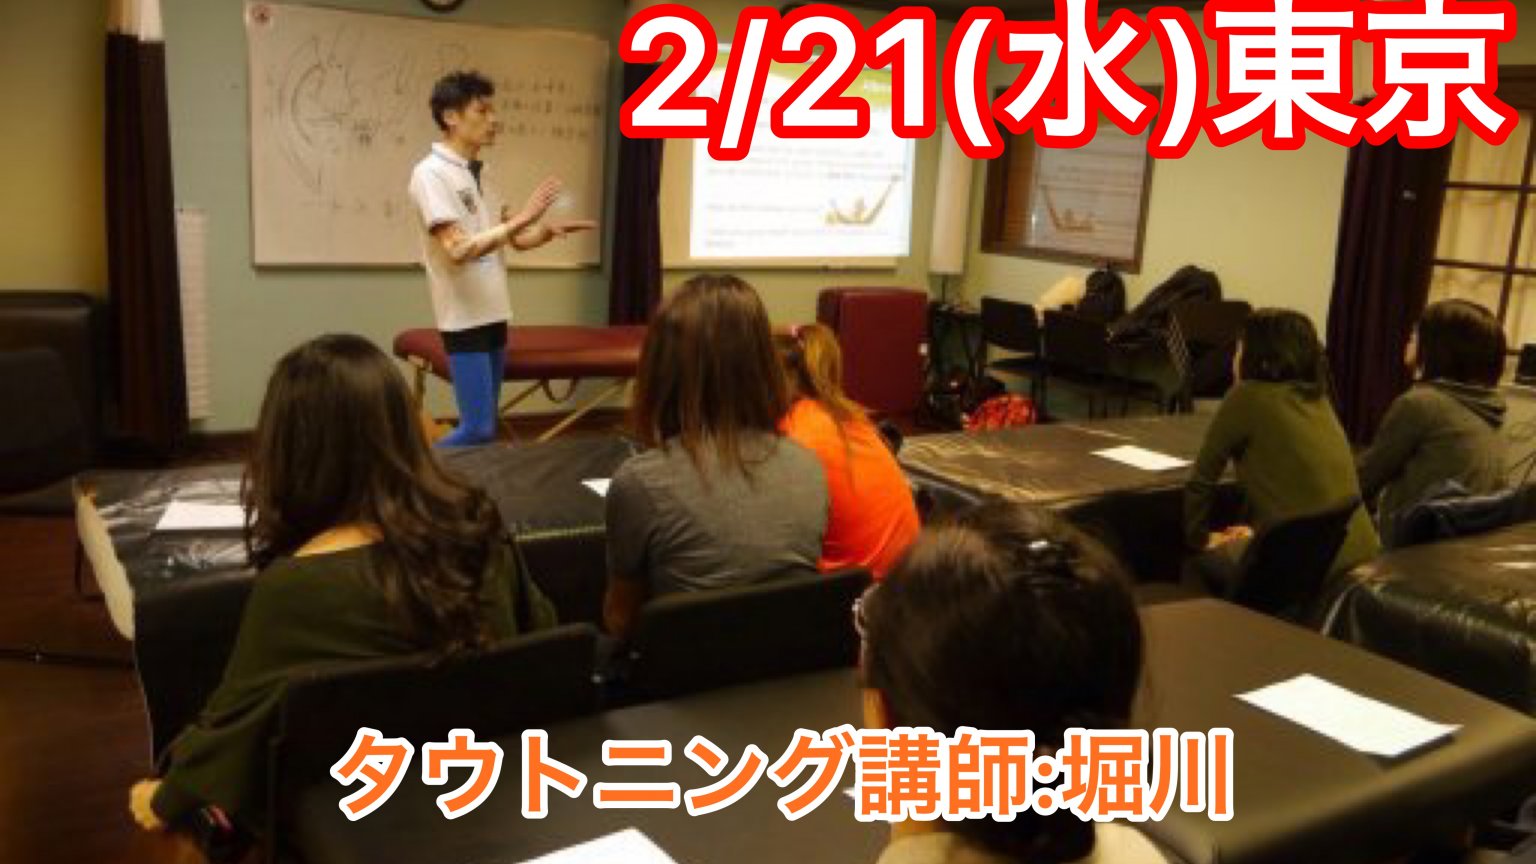 2月21日東京『タウトニング』J体感セミナー15:00〜17:30